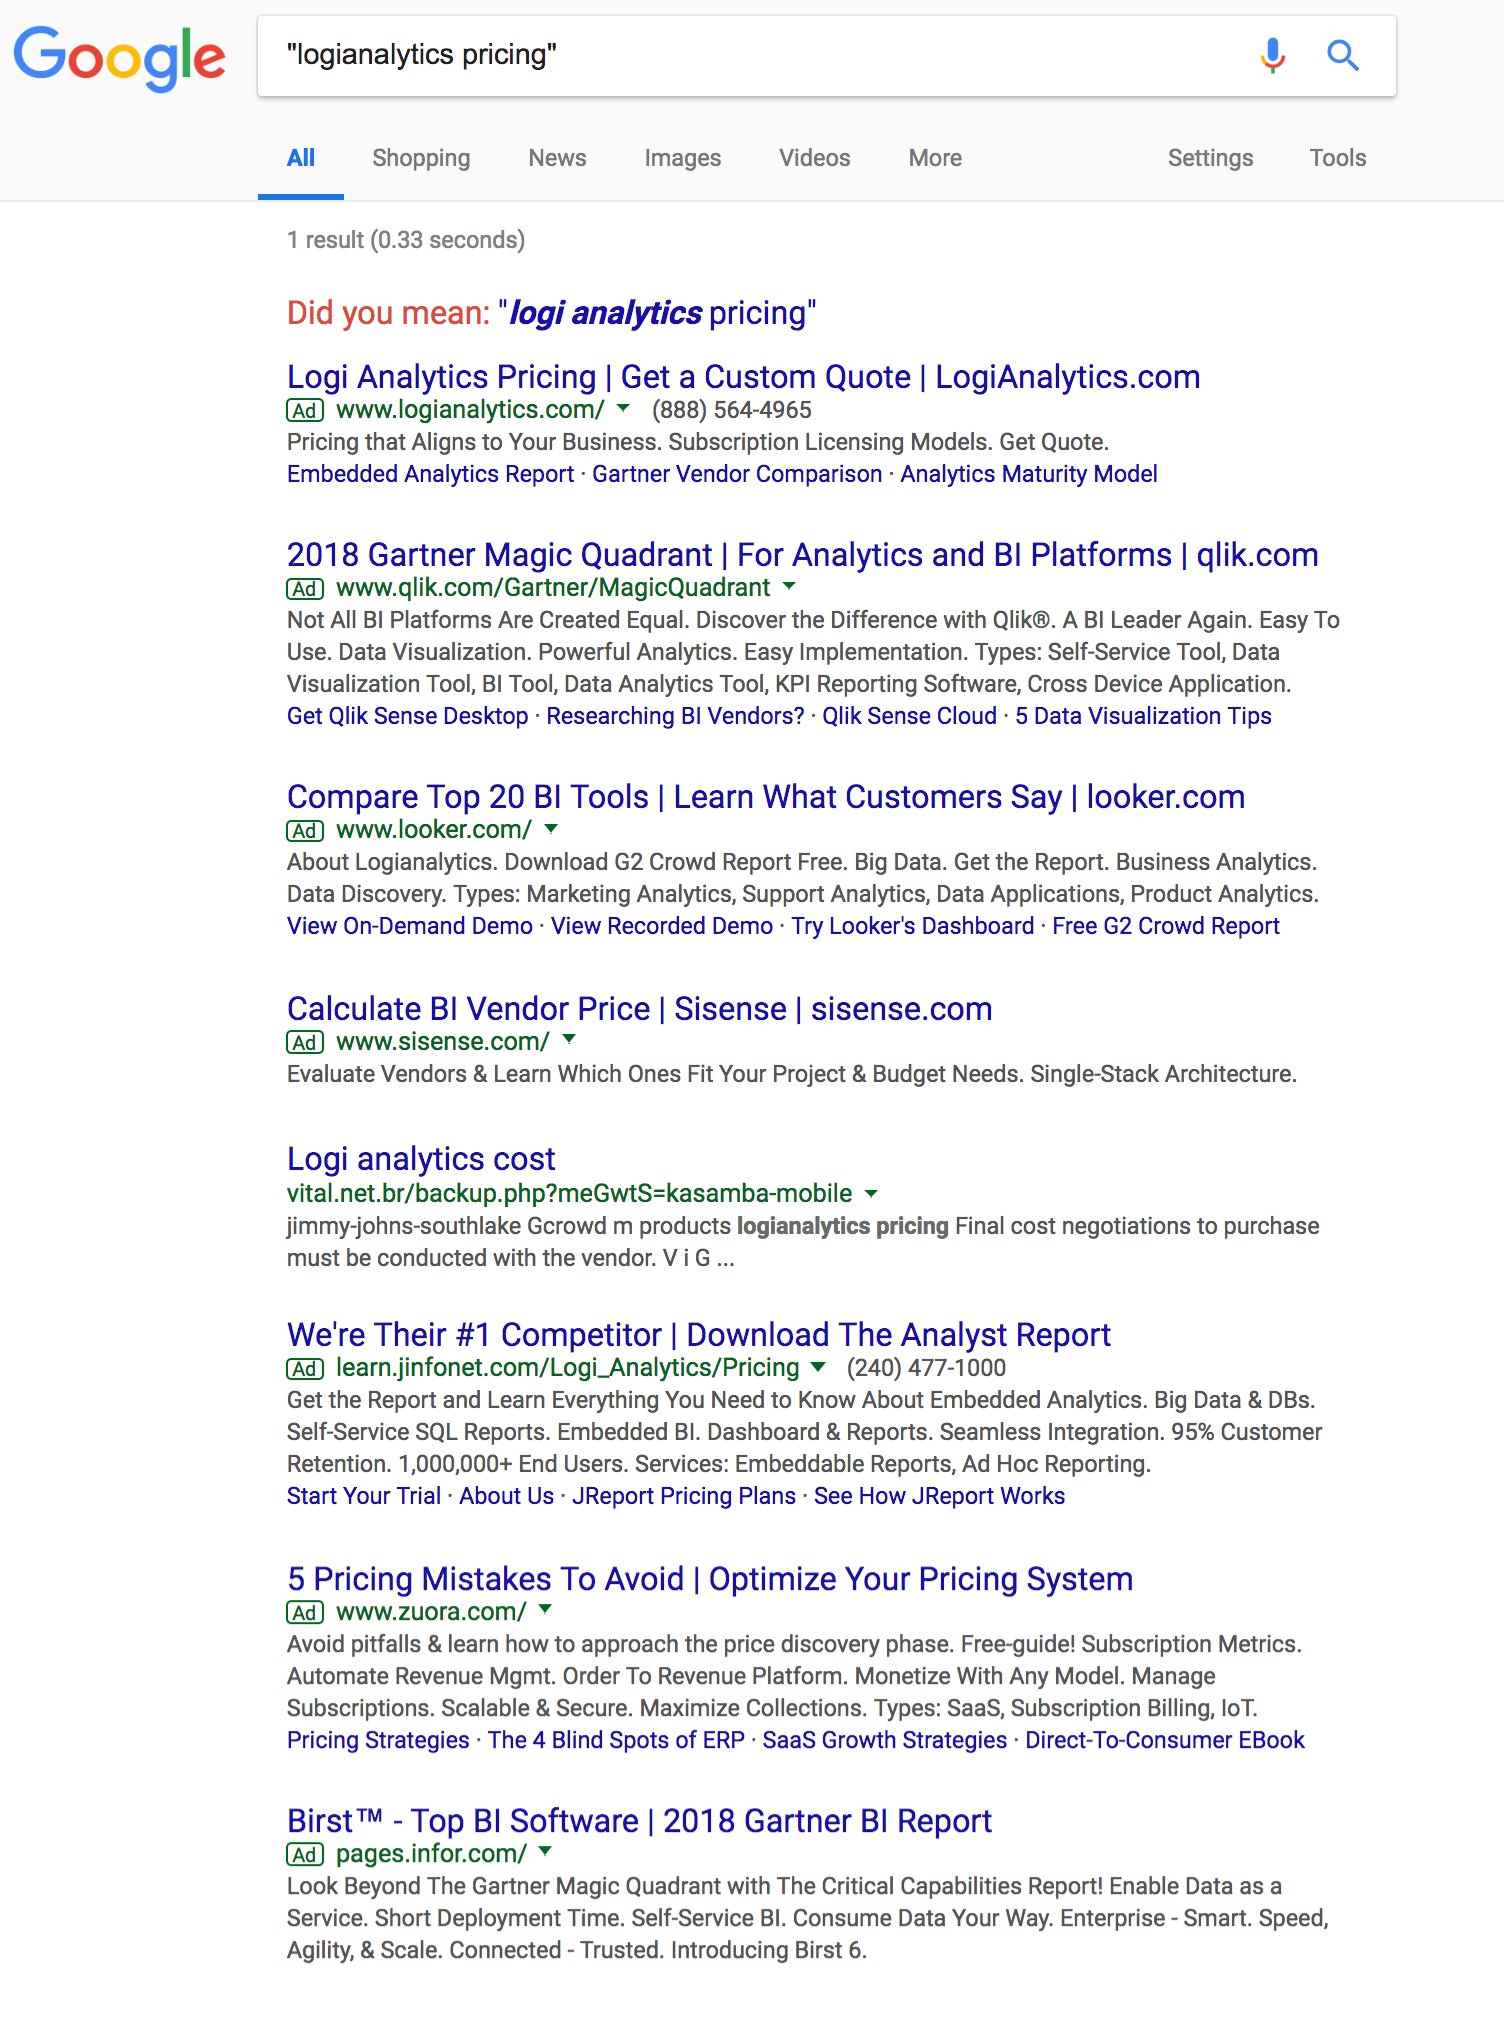 Google: nur ein organisches Ergebnis, sonst nur Ads